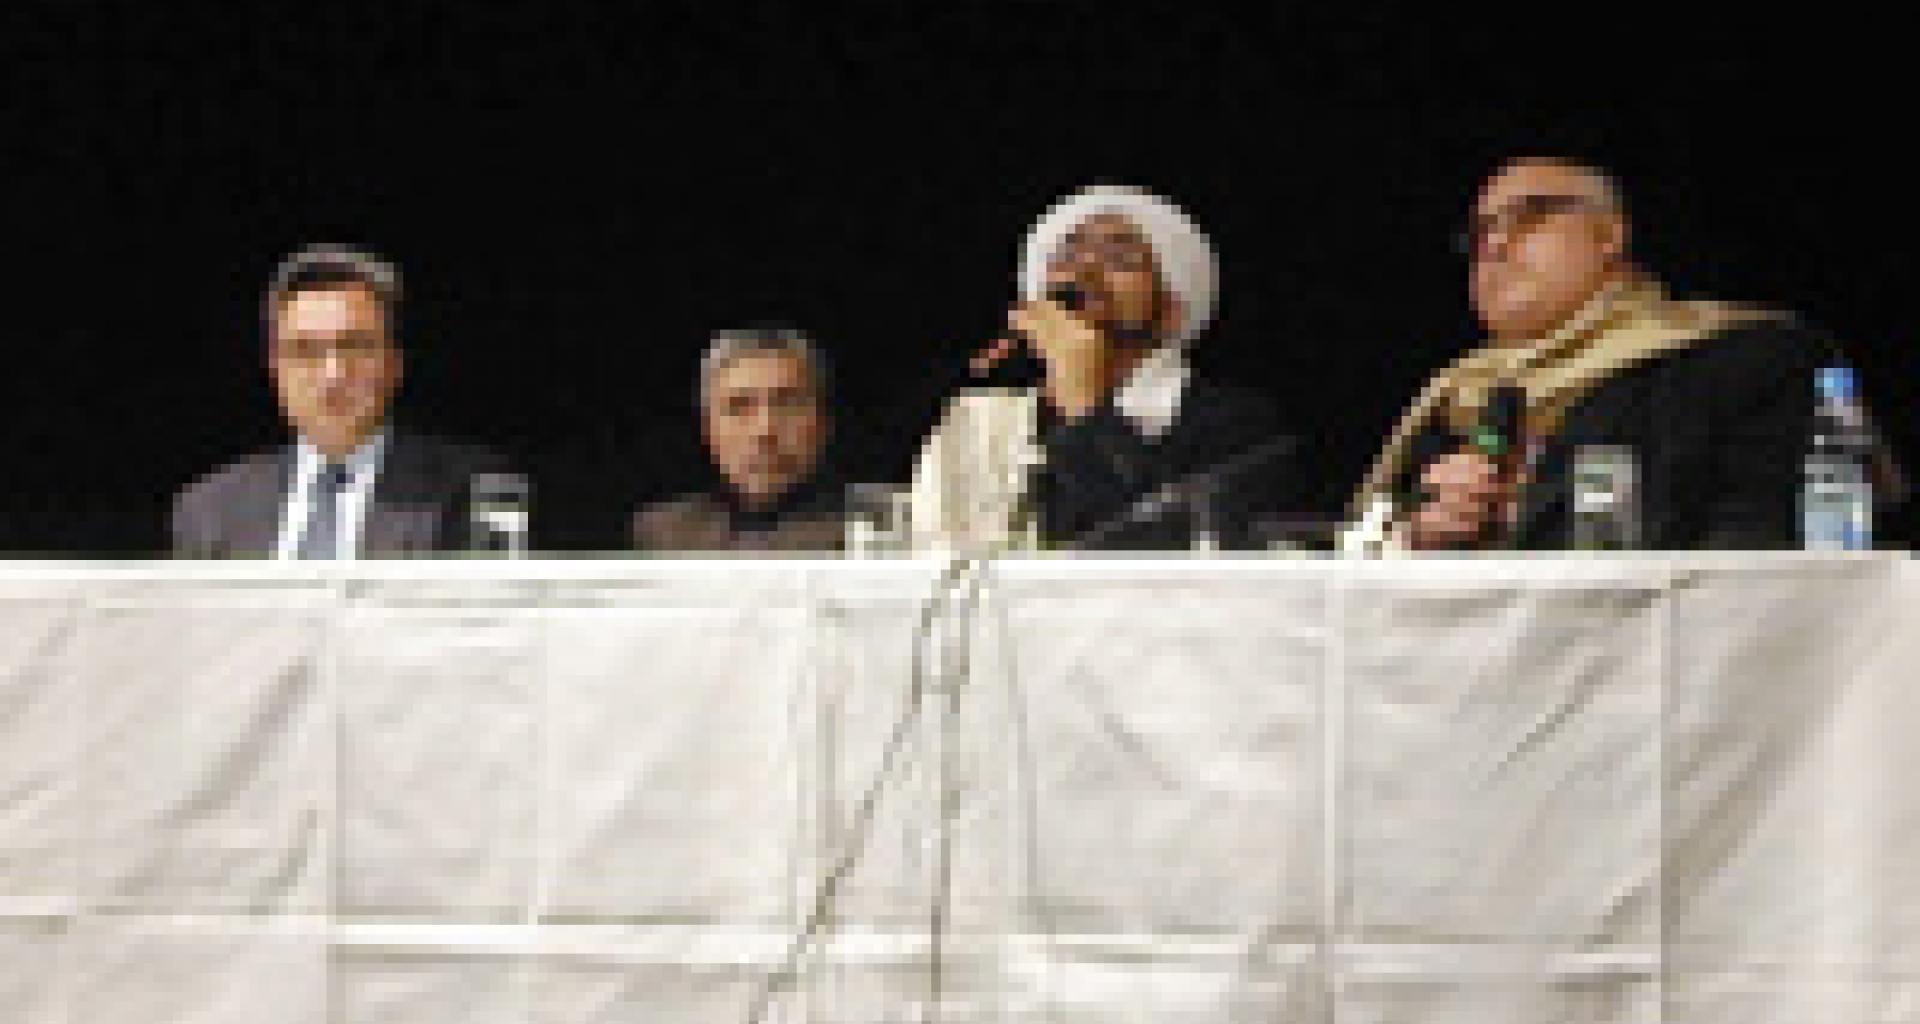 الحبيب عمر يلقي محاضرته في قاعة الينفيرسال